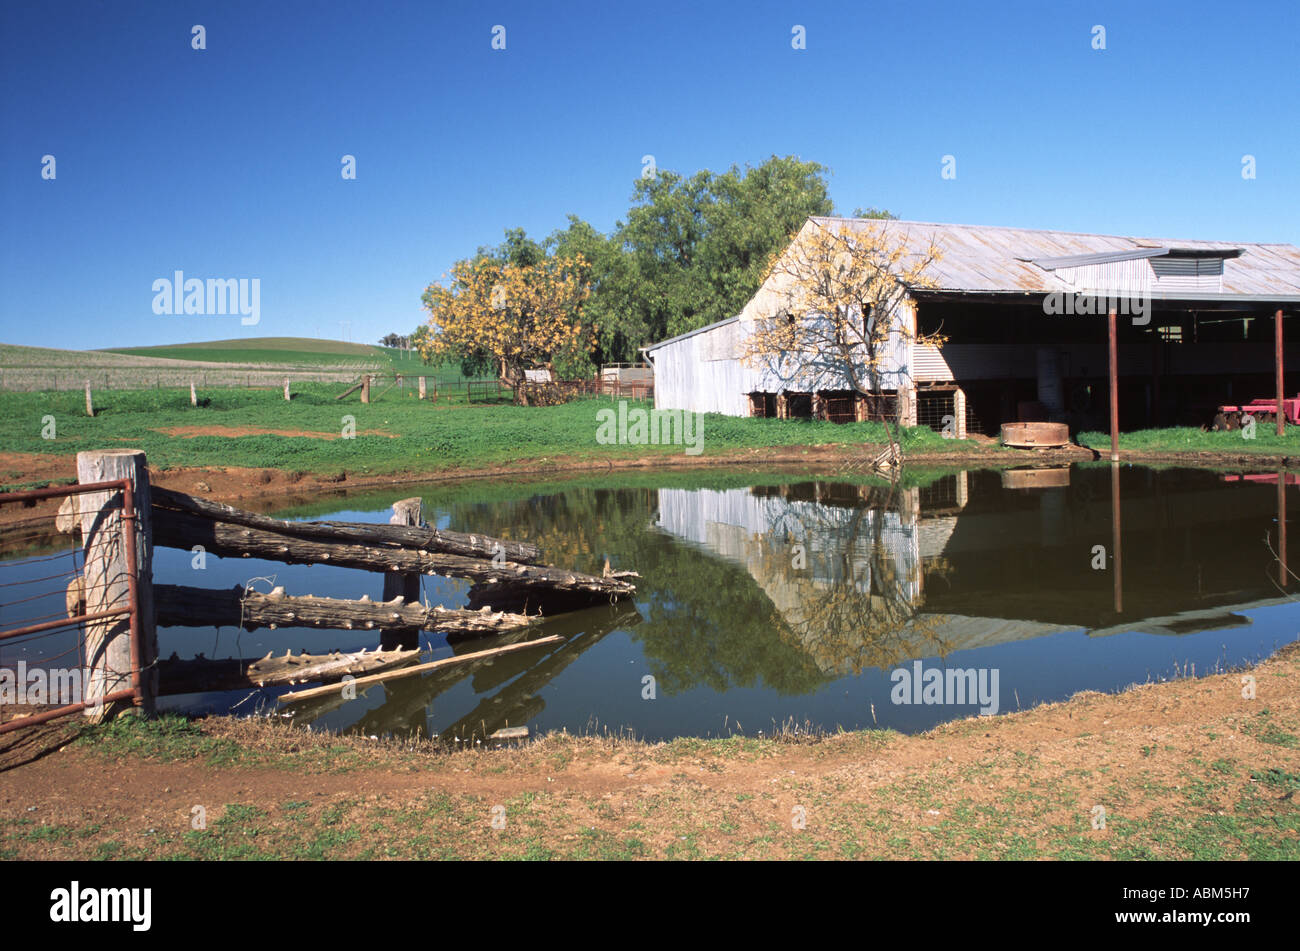 Paesaggio rurale con riflessioni in una fattoria australiana dam creando una scena di tranquillità rurale Foto Stock